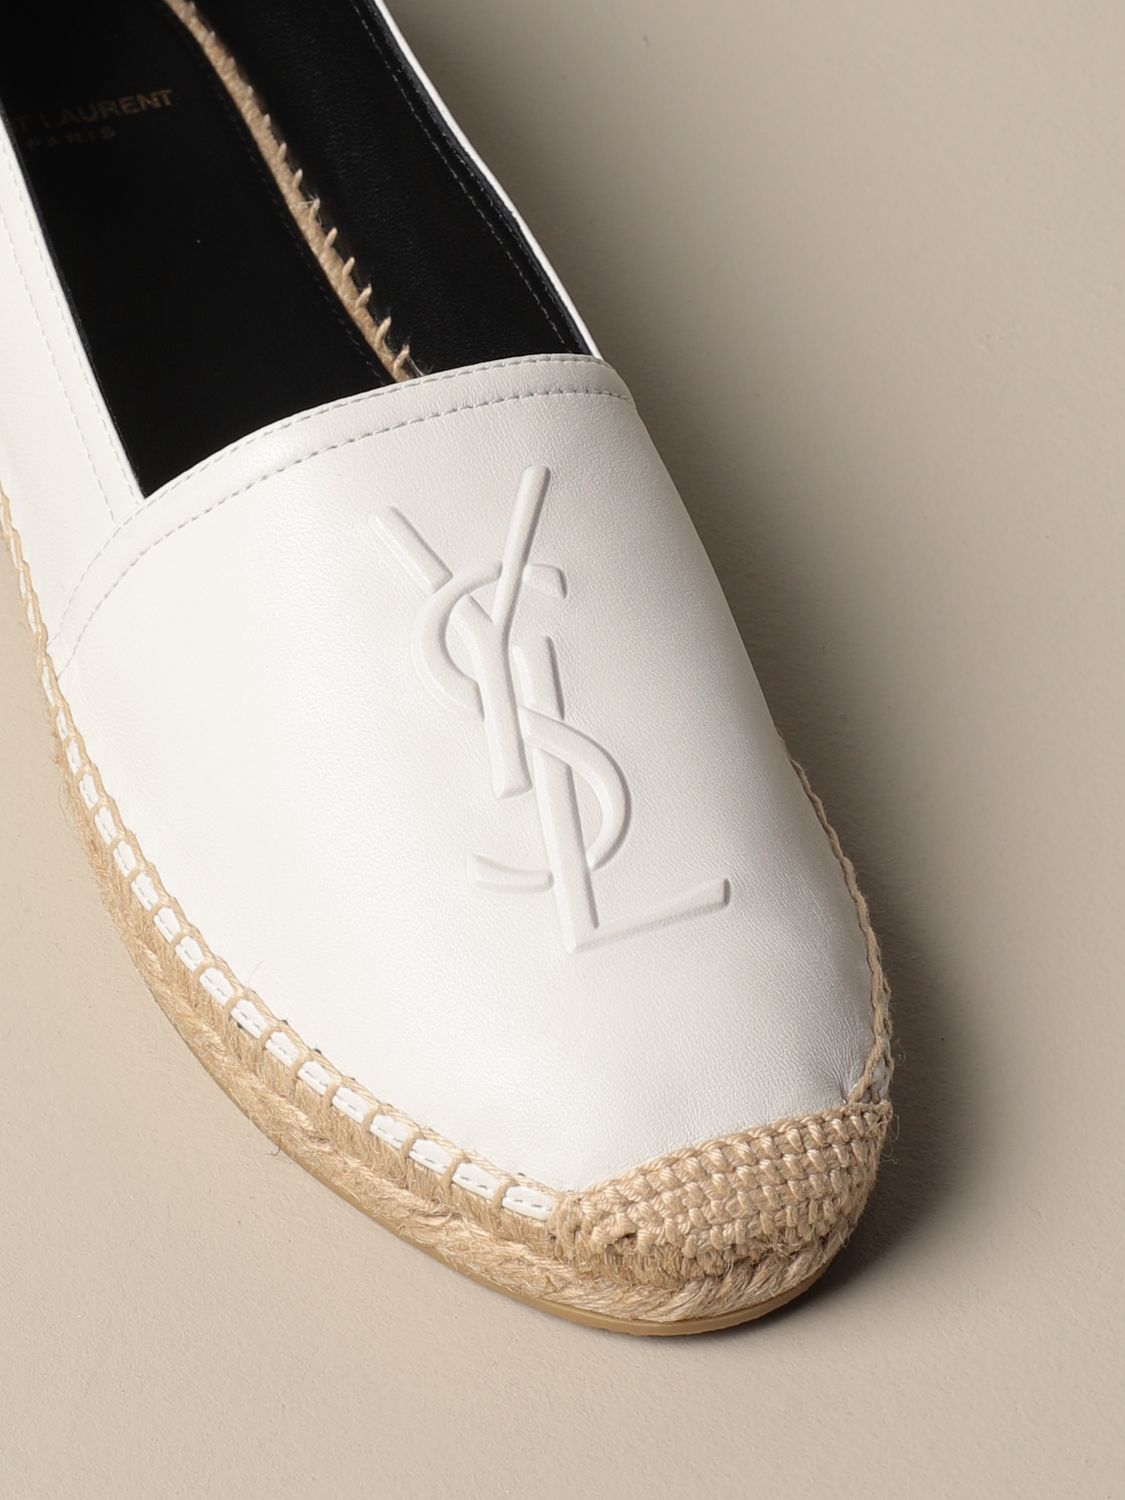 SAINT LAURENT: leather espadrilles with YSL logo | Espadrilles Saint